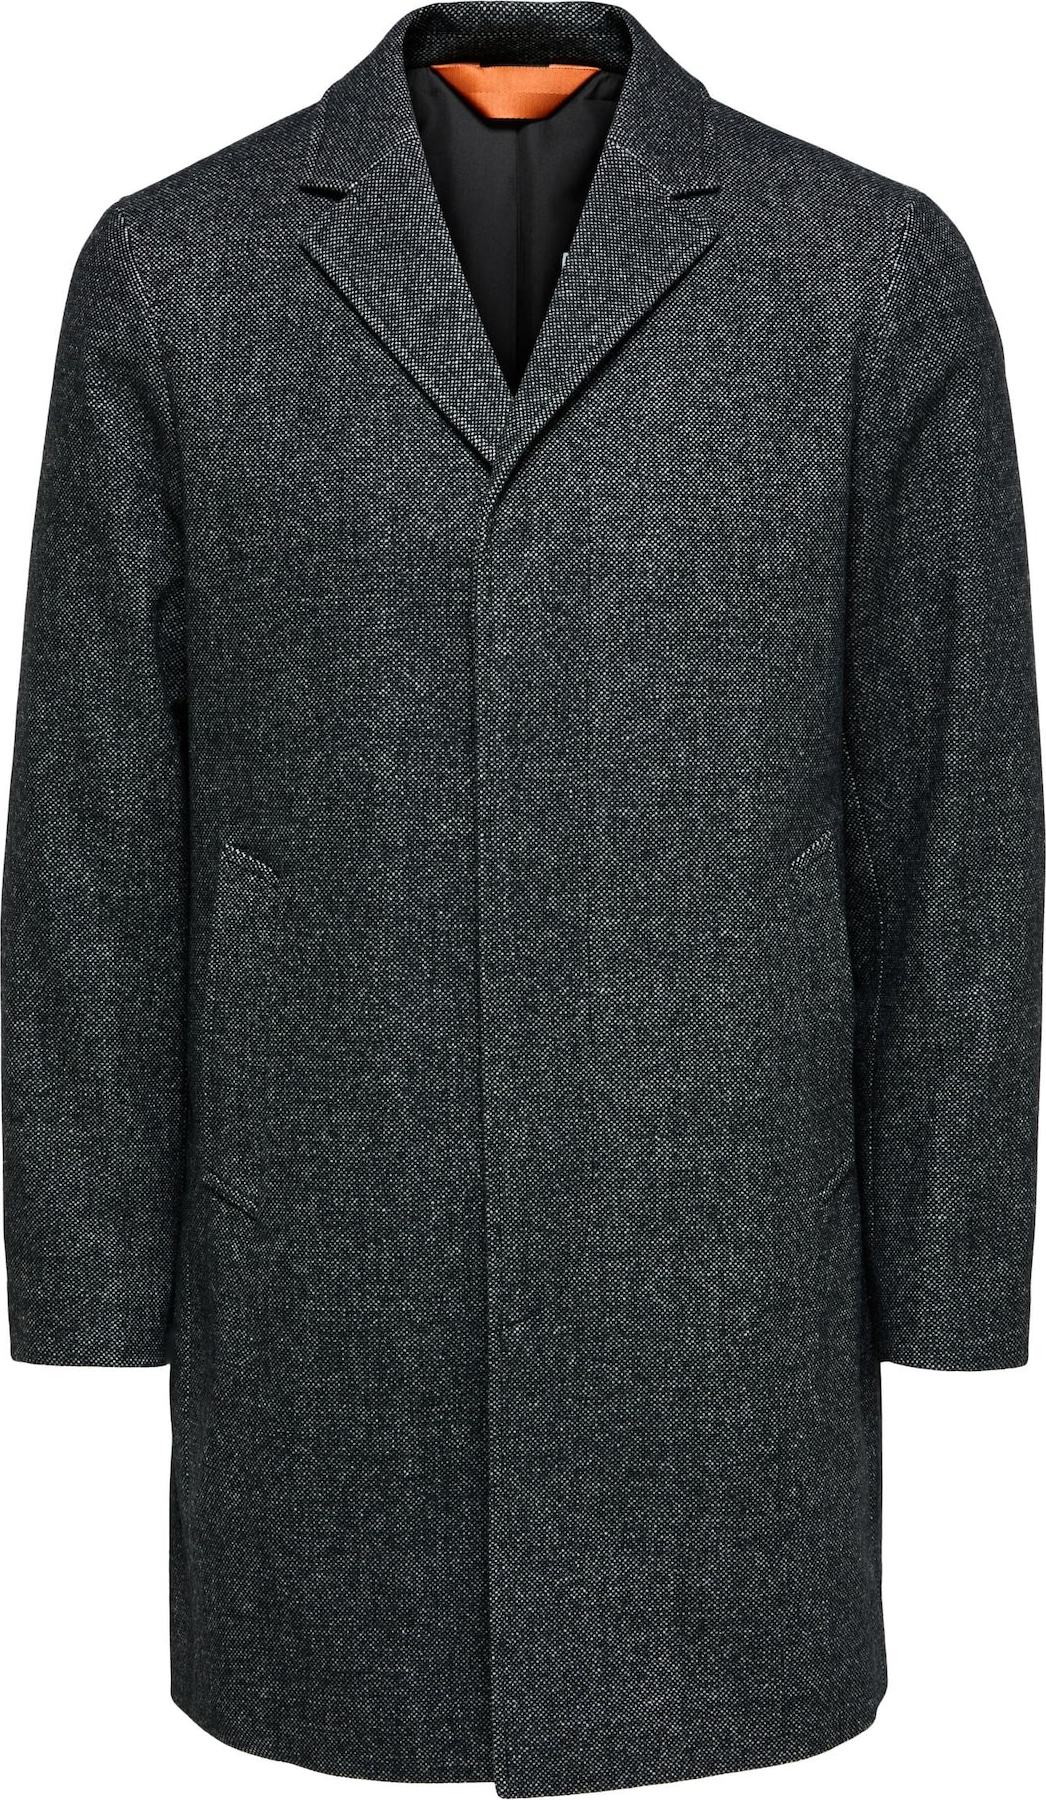 SELECTED HOMME Přechodný kabát 'Hagen' šedý melír